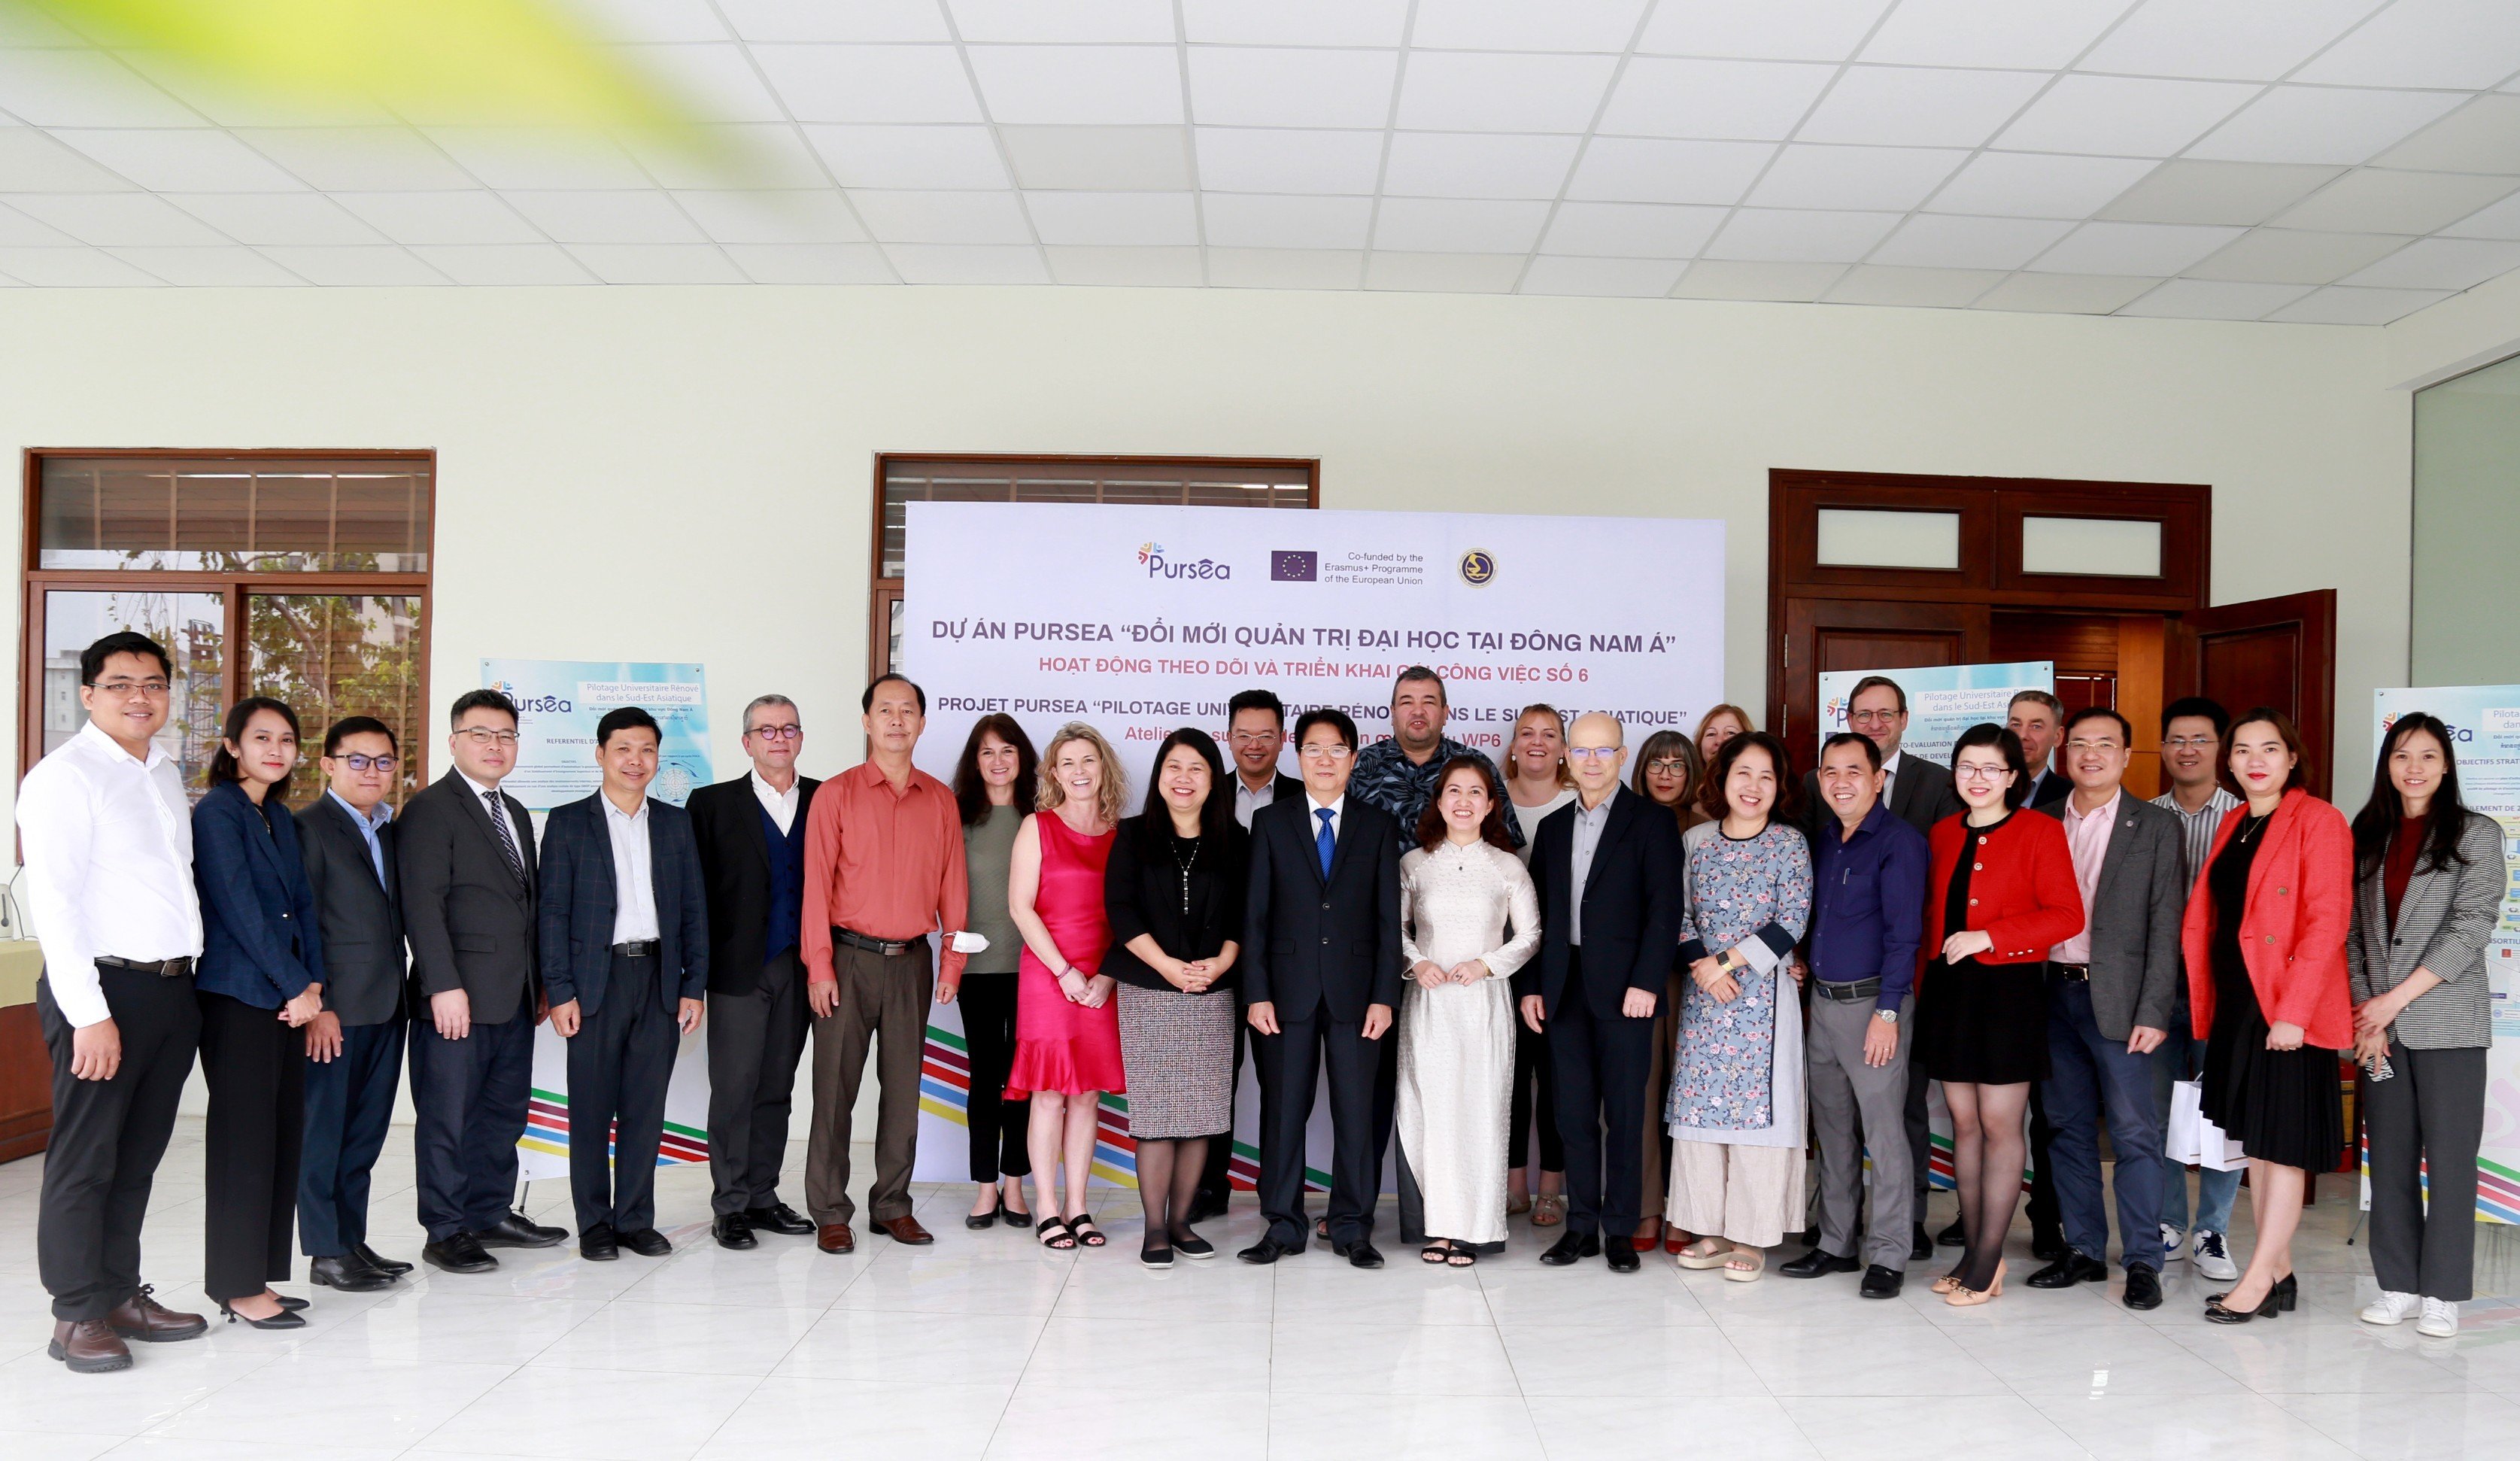 Trường Đại học Giao thông vận tải tổ chức thành công cuộc họp đánh giá tiến độ dự án Đổi mới Quản trị đại học tại Đông Nam Á